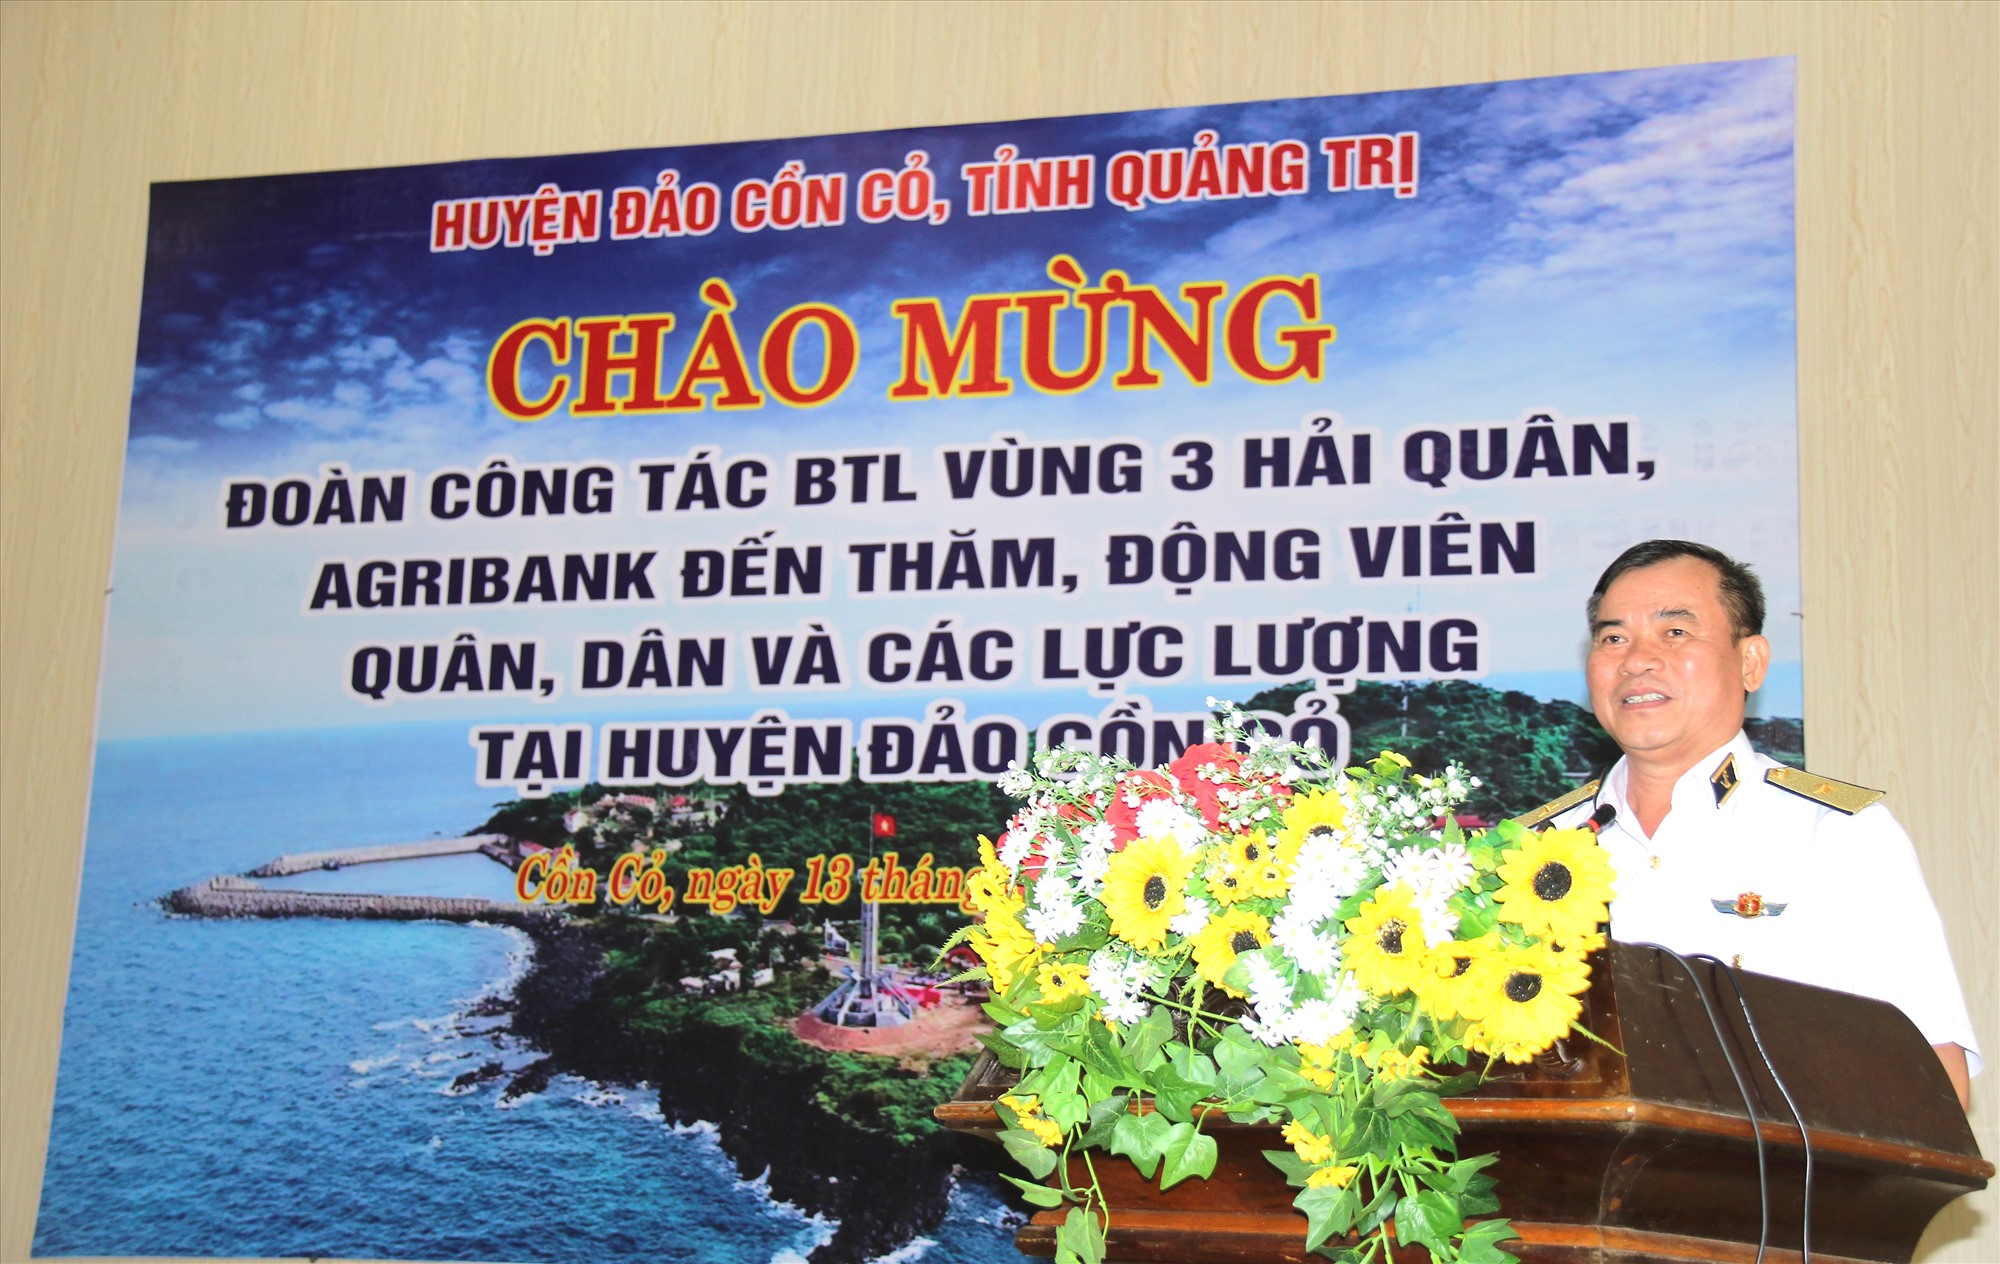 Chính ủy Vùng 3 Hải quân, Chuẩn Đô đốc Nguyễn Đăng Tiến phát biểu tại lễ trao quà cho cấp ủy, chính quyền, quân và dân huyện đảo Cồn Cỏ - Ảnh: H.A